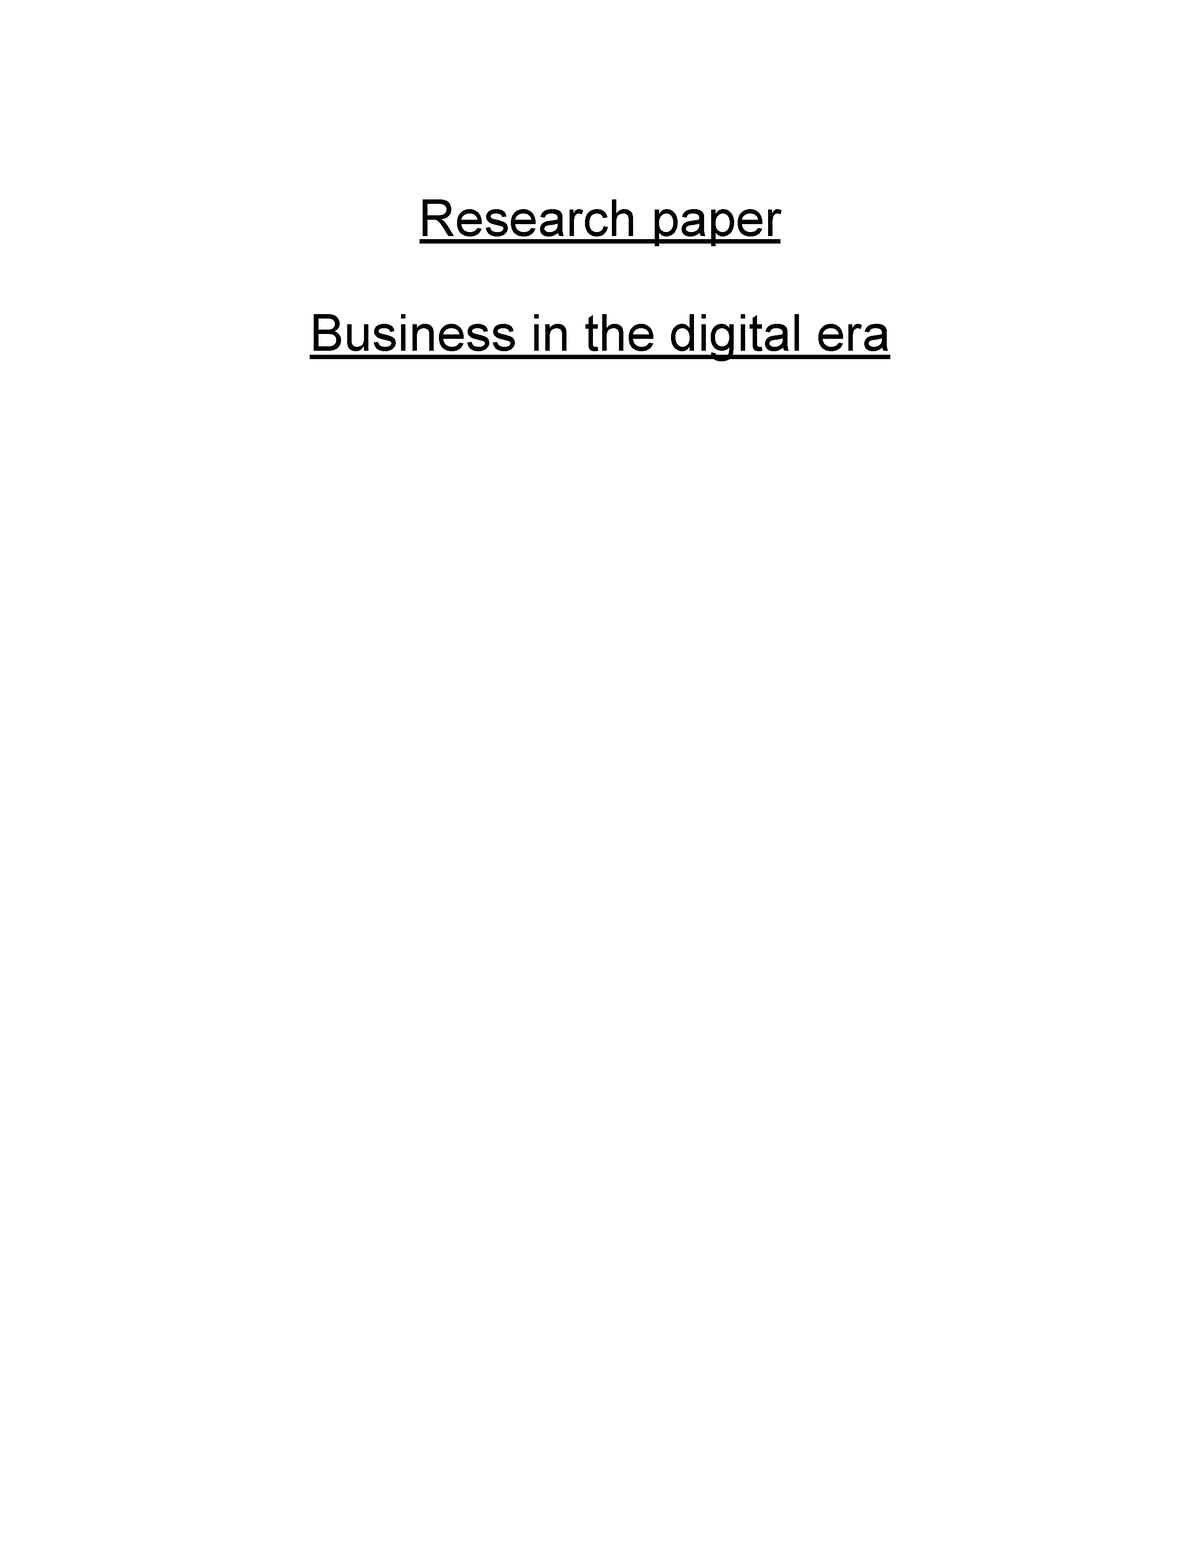 business in digital era research paper